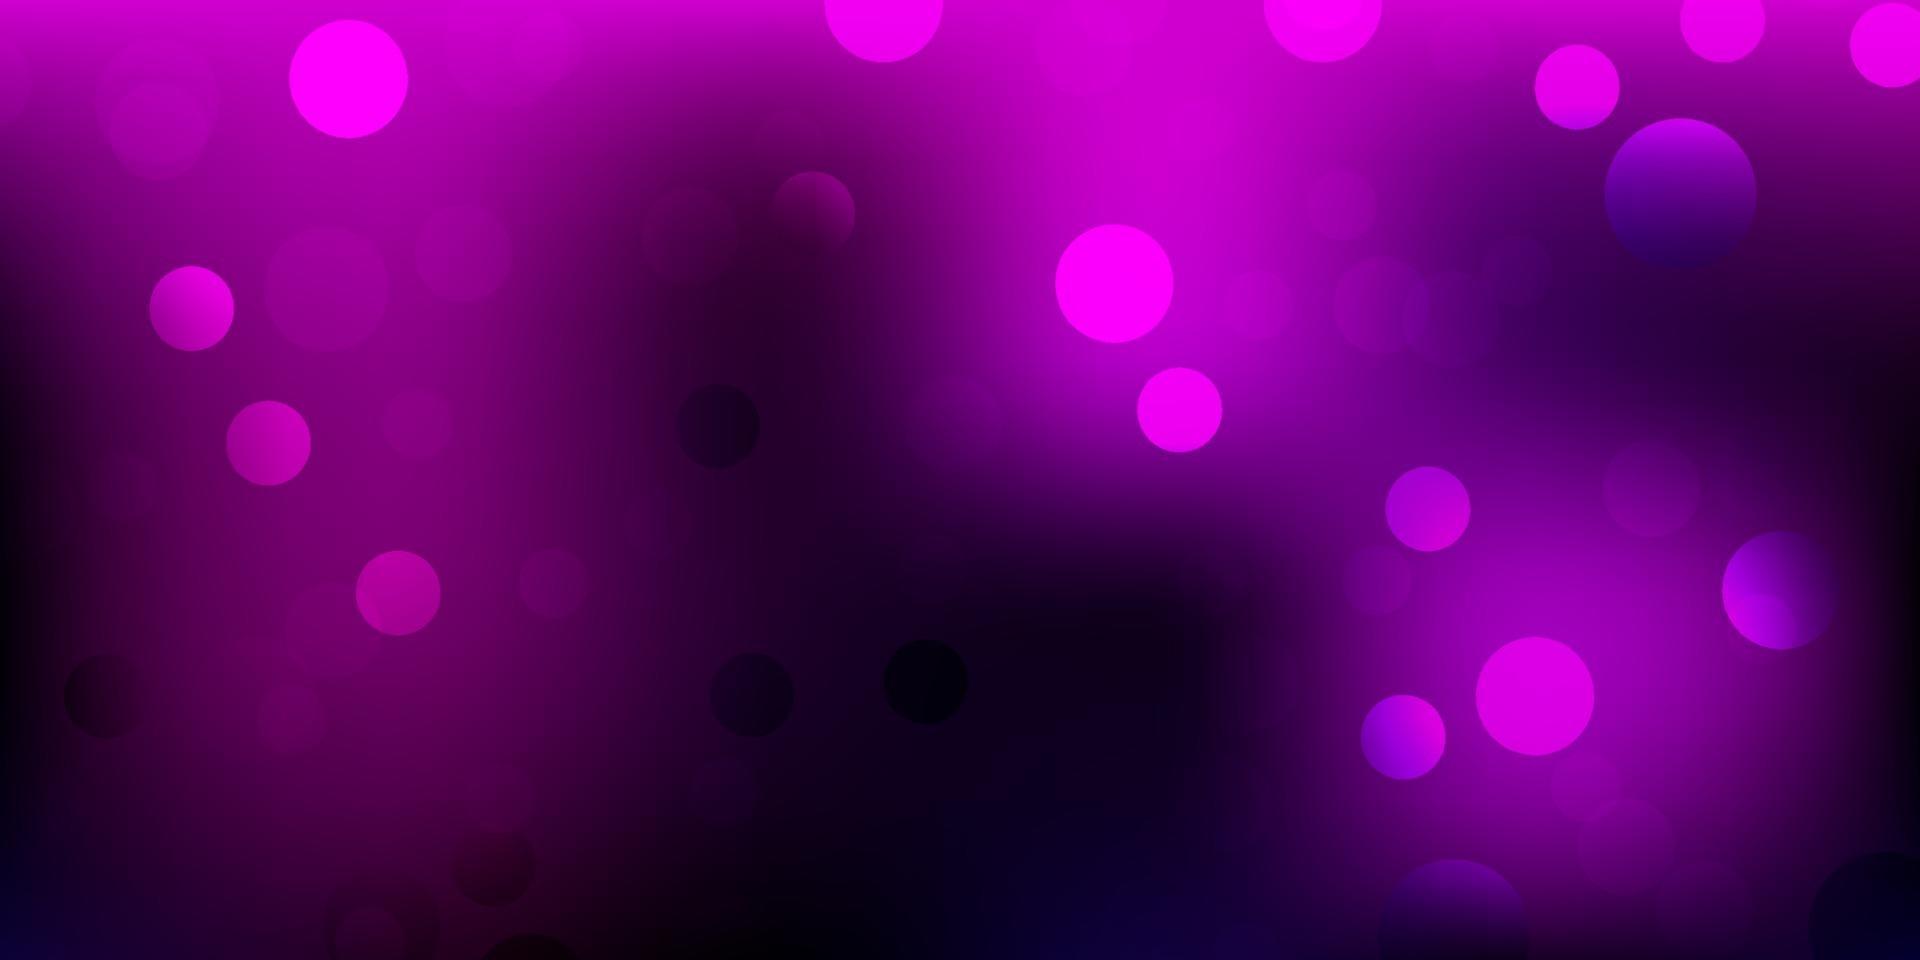 sfondo vettoriale rosa scuro con bolle.